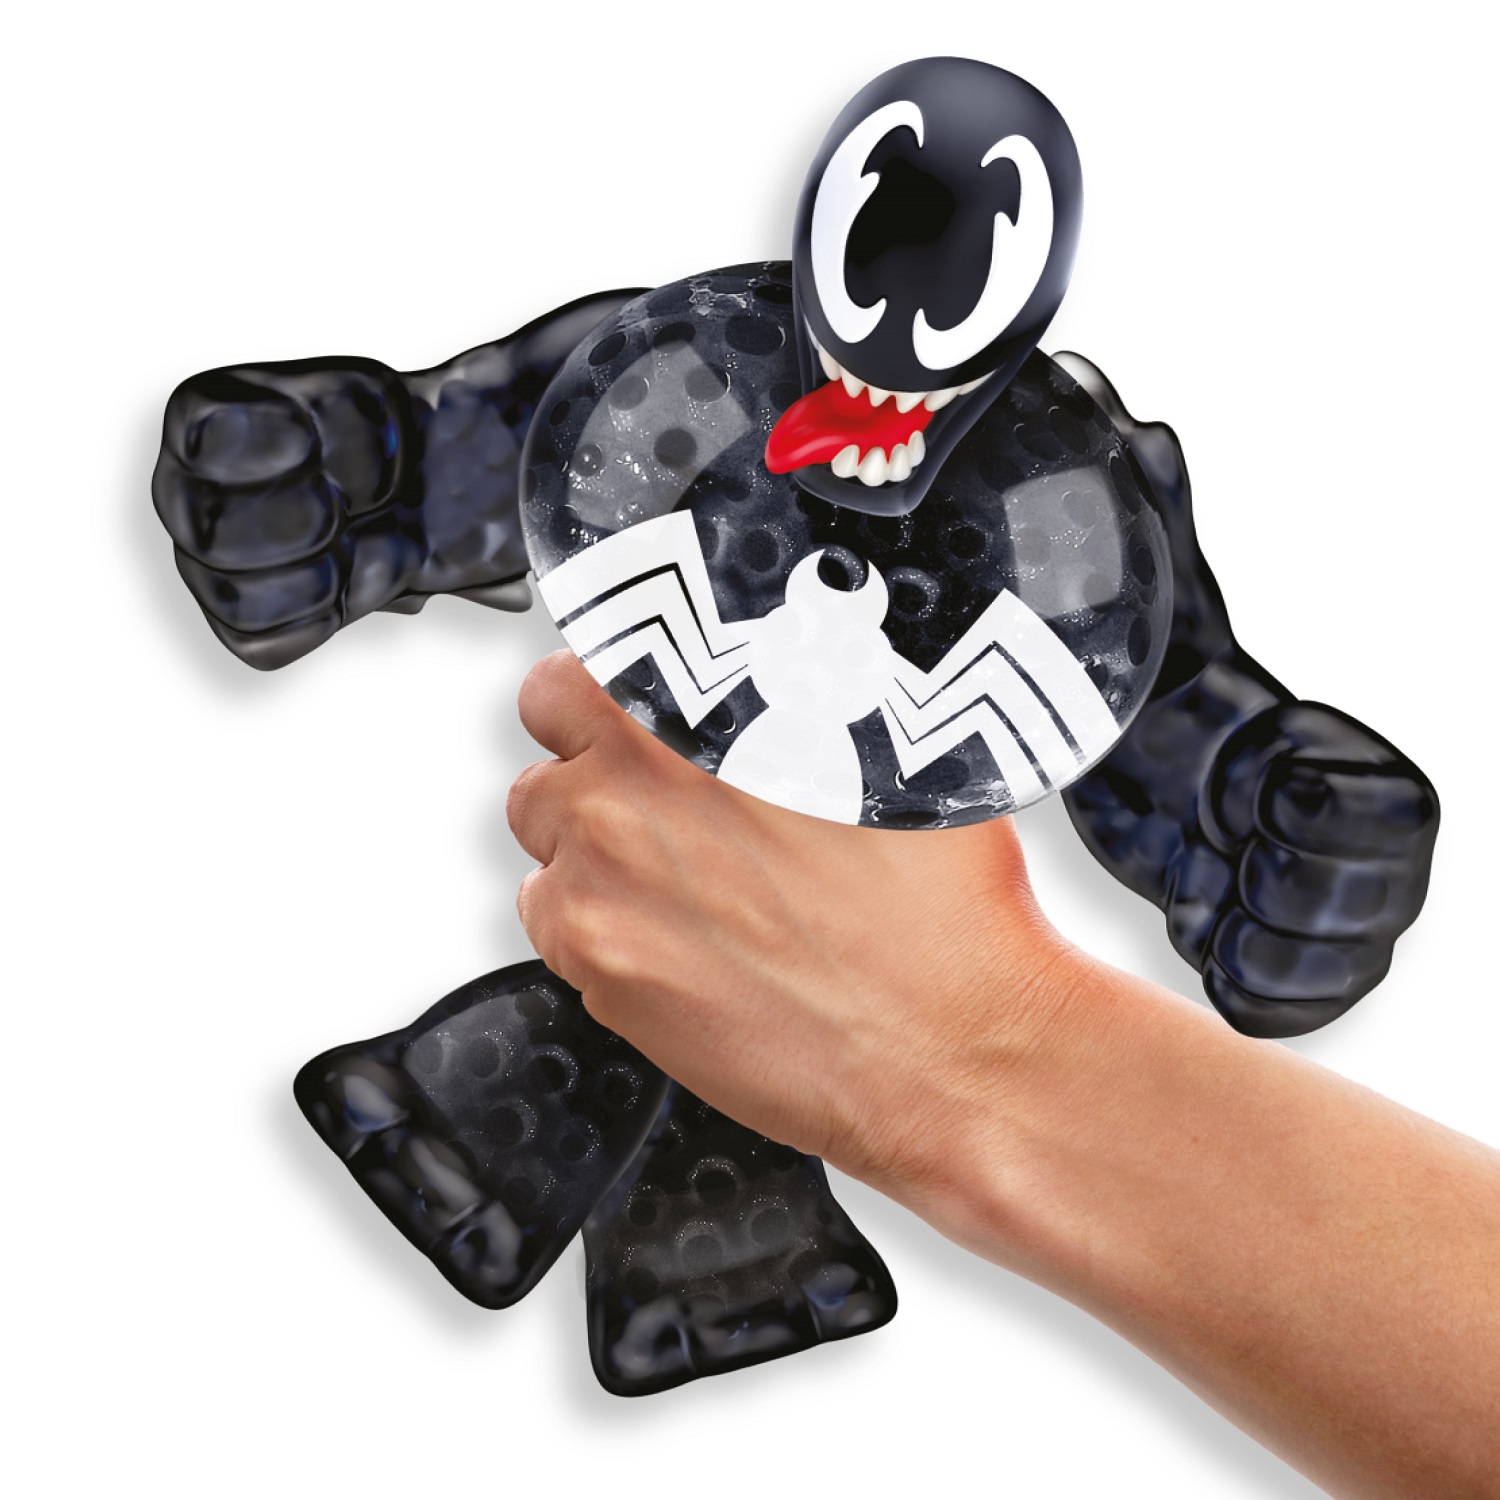 Гуджитсу Игровой набор тянущихся фигурок Человек-Паук и Веном ТМ GooJitZu